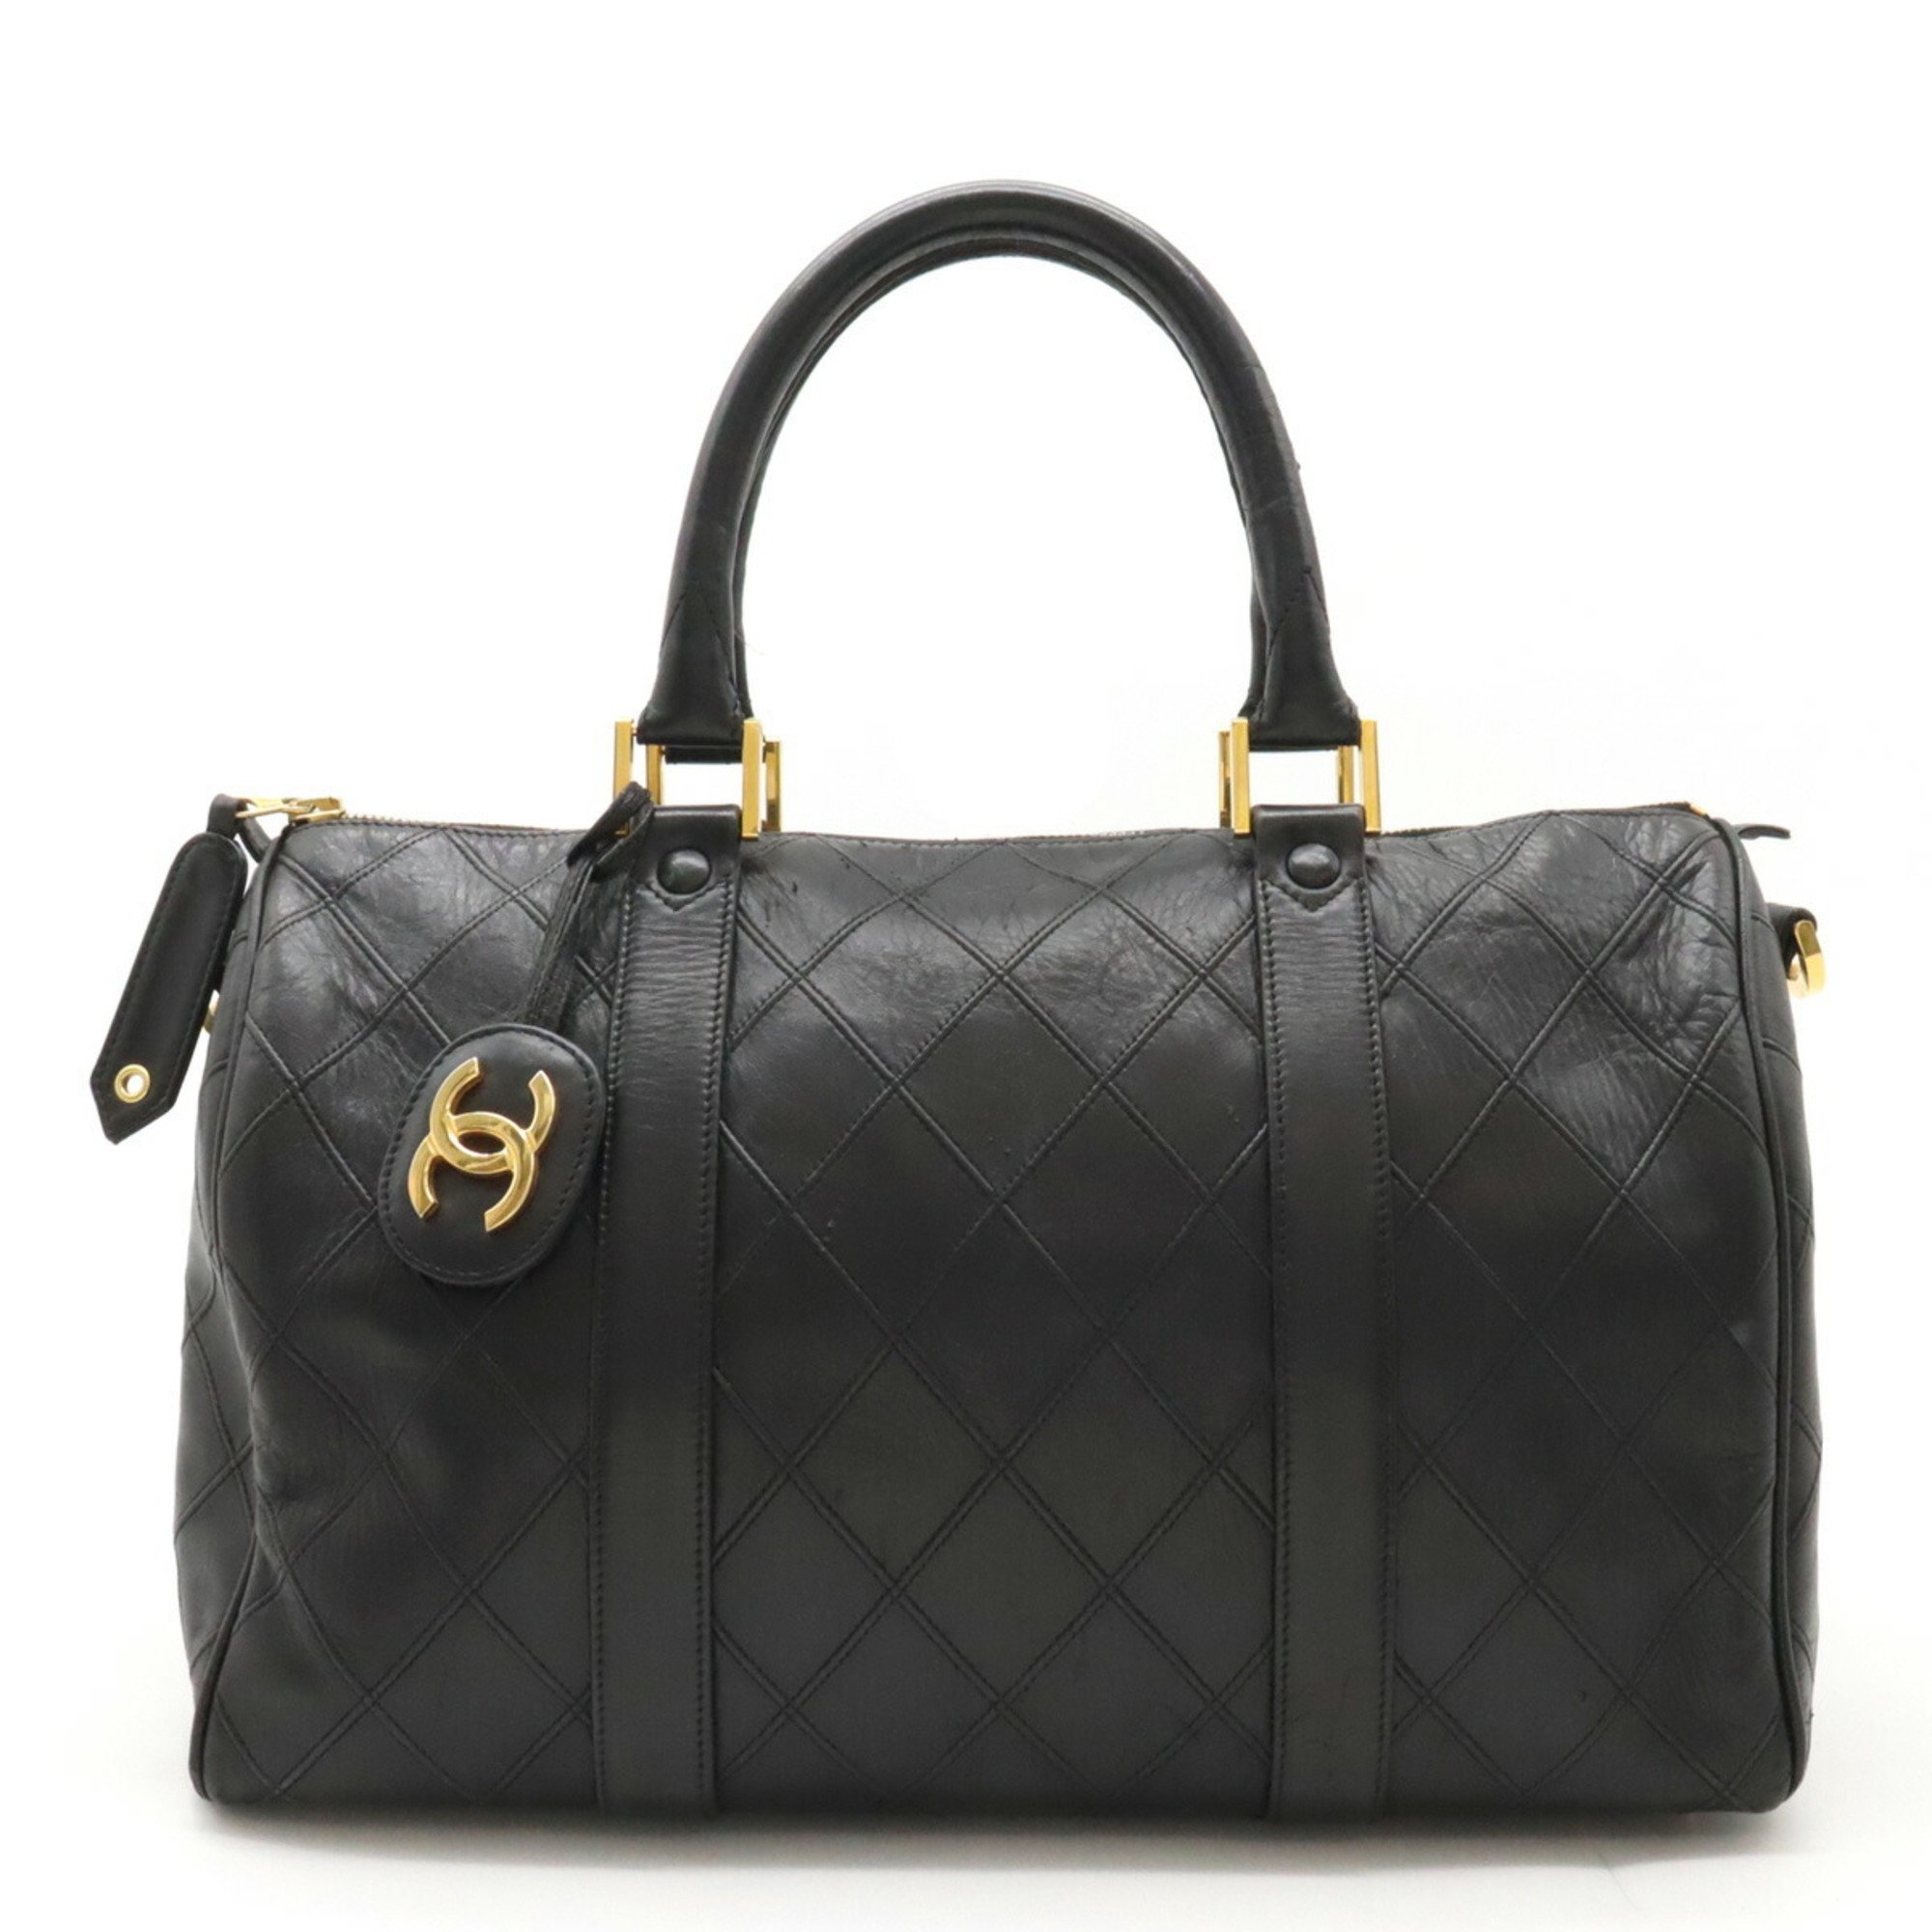 CHANEL Bicolor Coco Mark Handbag Boston Bag Leather Black